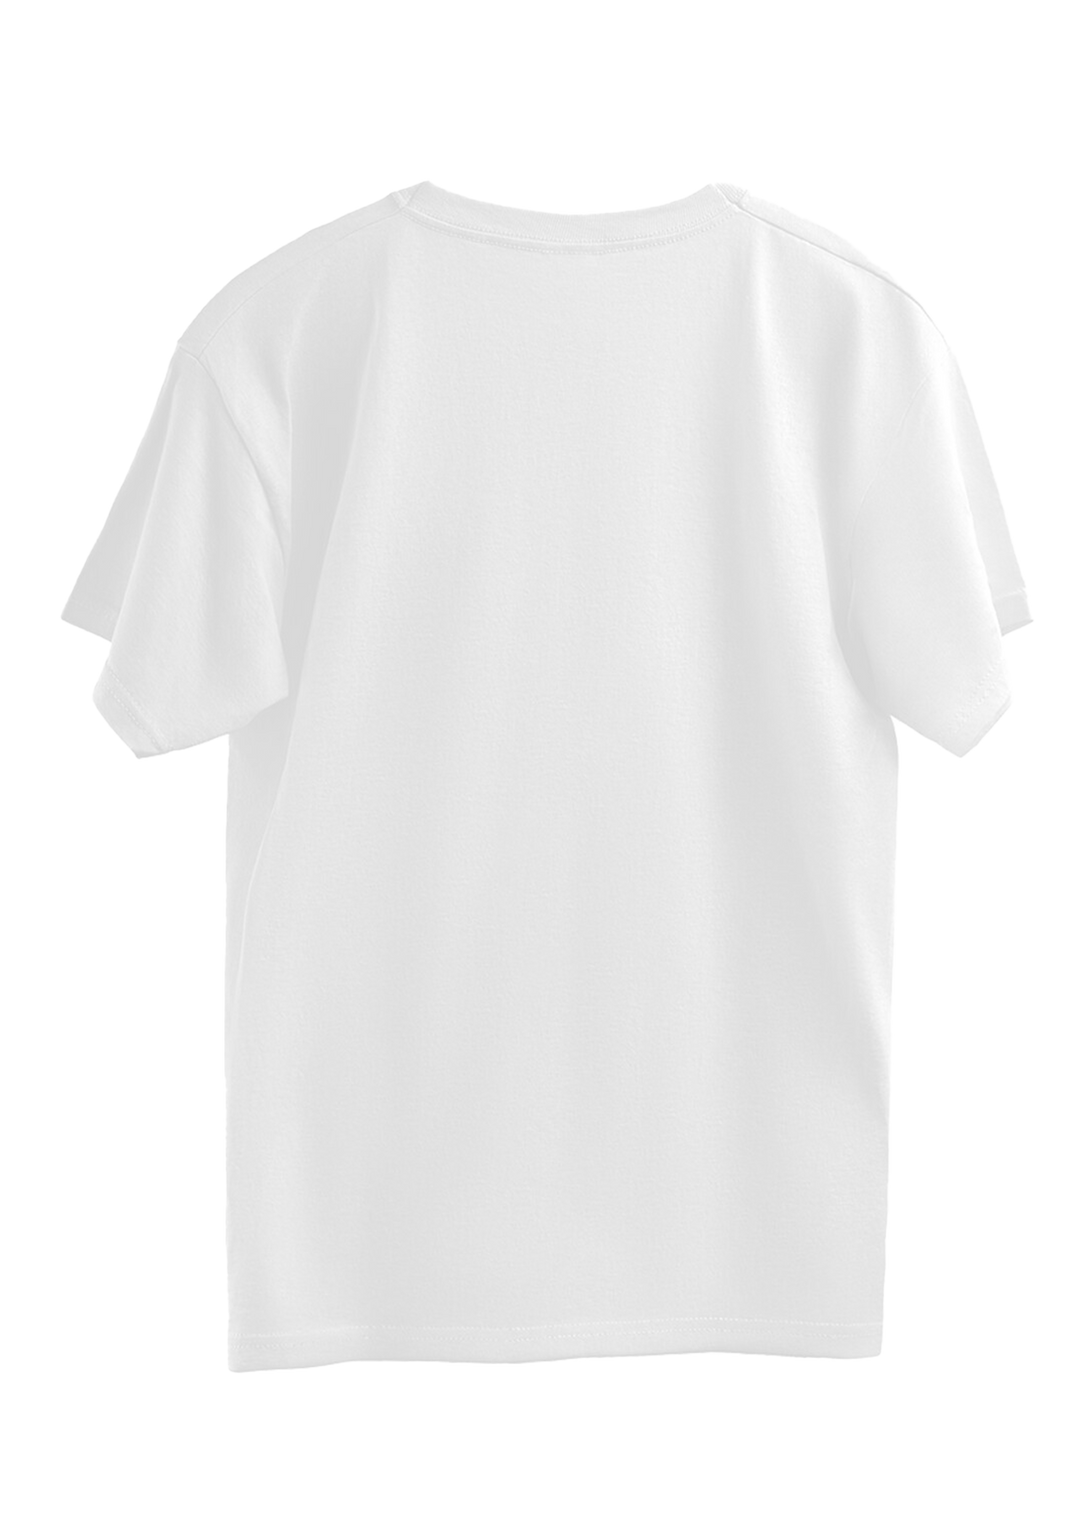 Yoga Poses Oversized T-shirt